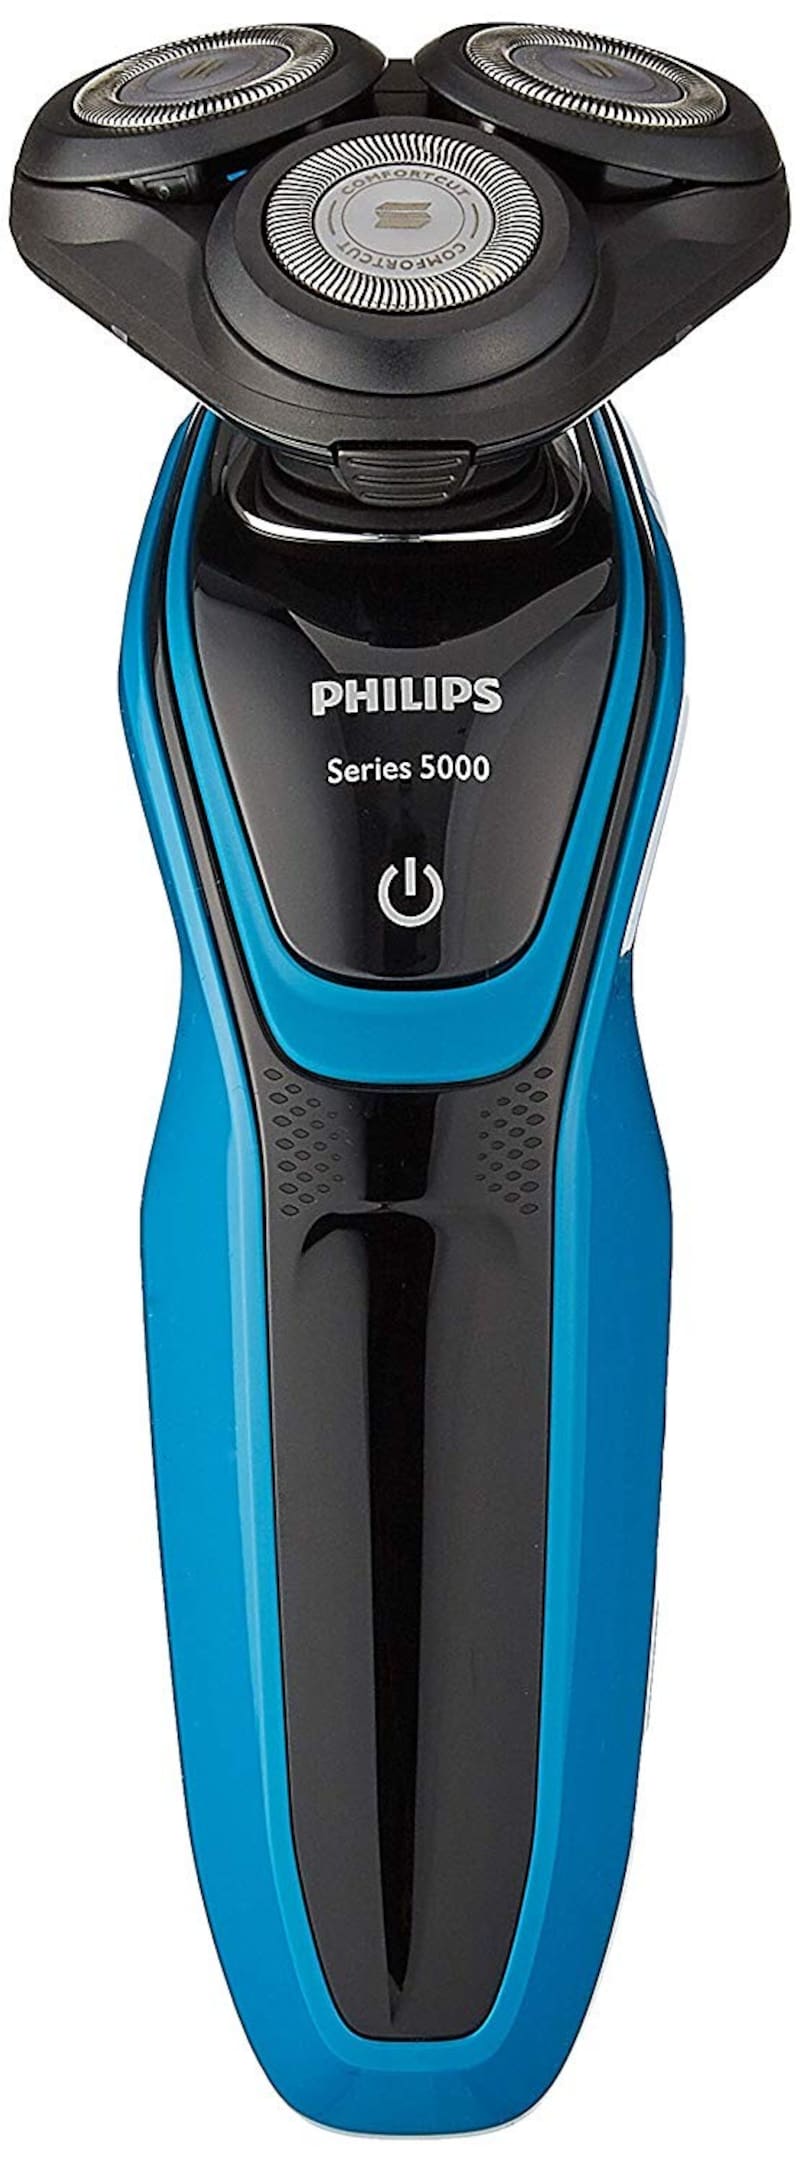 フィリップス, 5000シリーズ メンズ 電気シェーバー 27枚刃,S5050/05